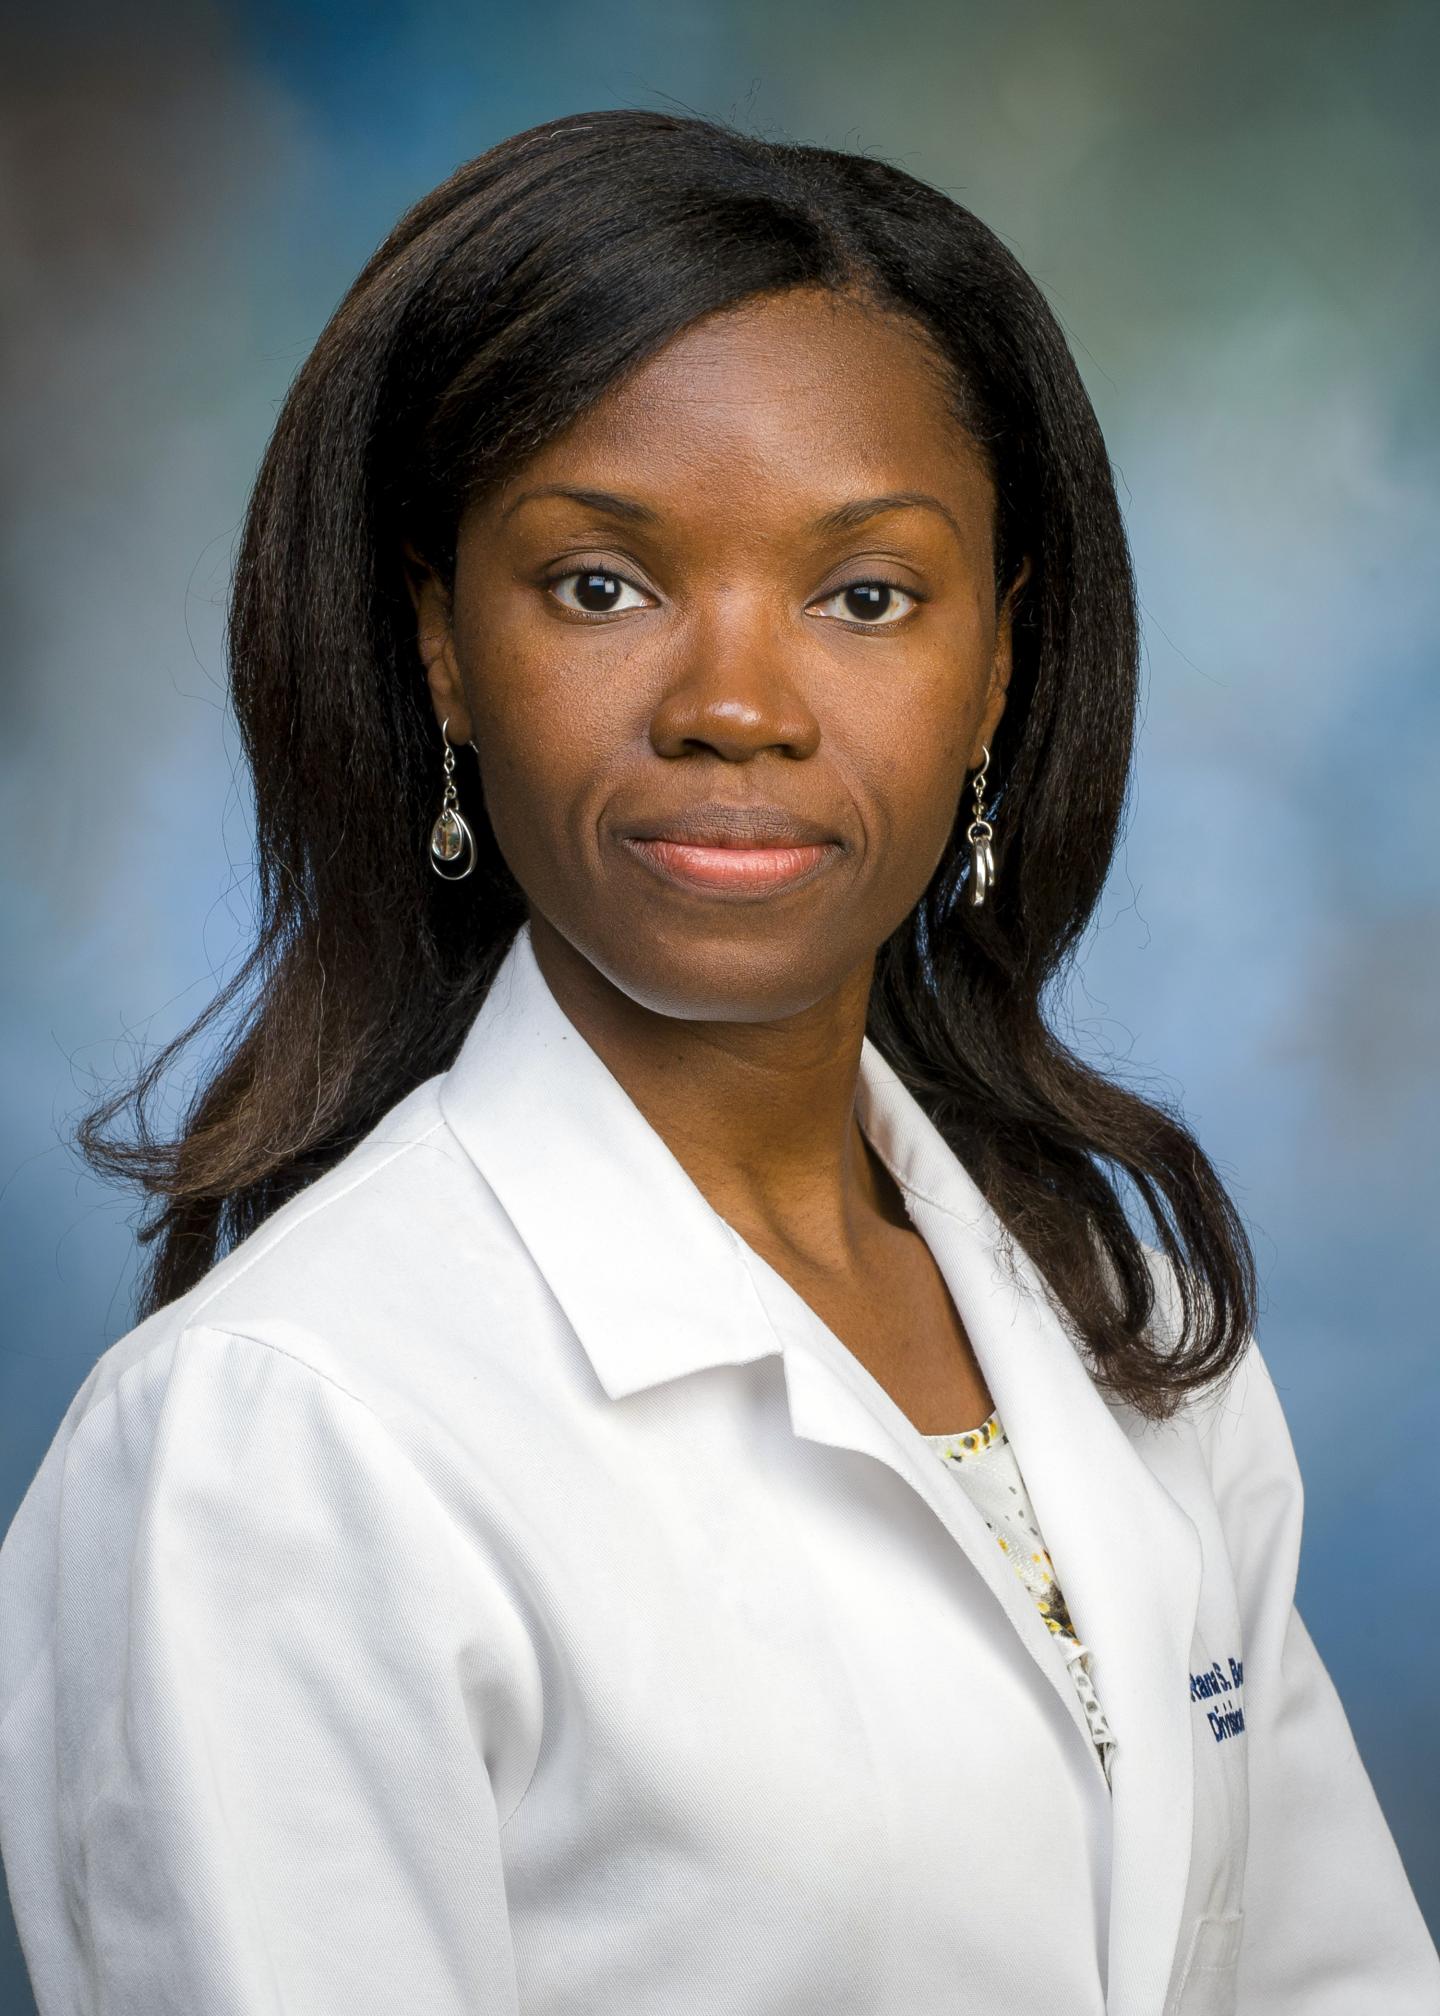 Rana Bonds, University of Texas Medical Branch at Galveston